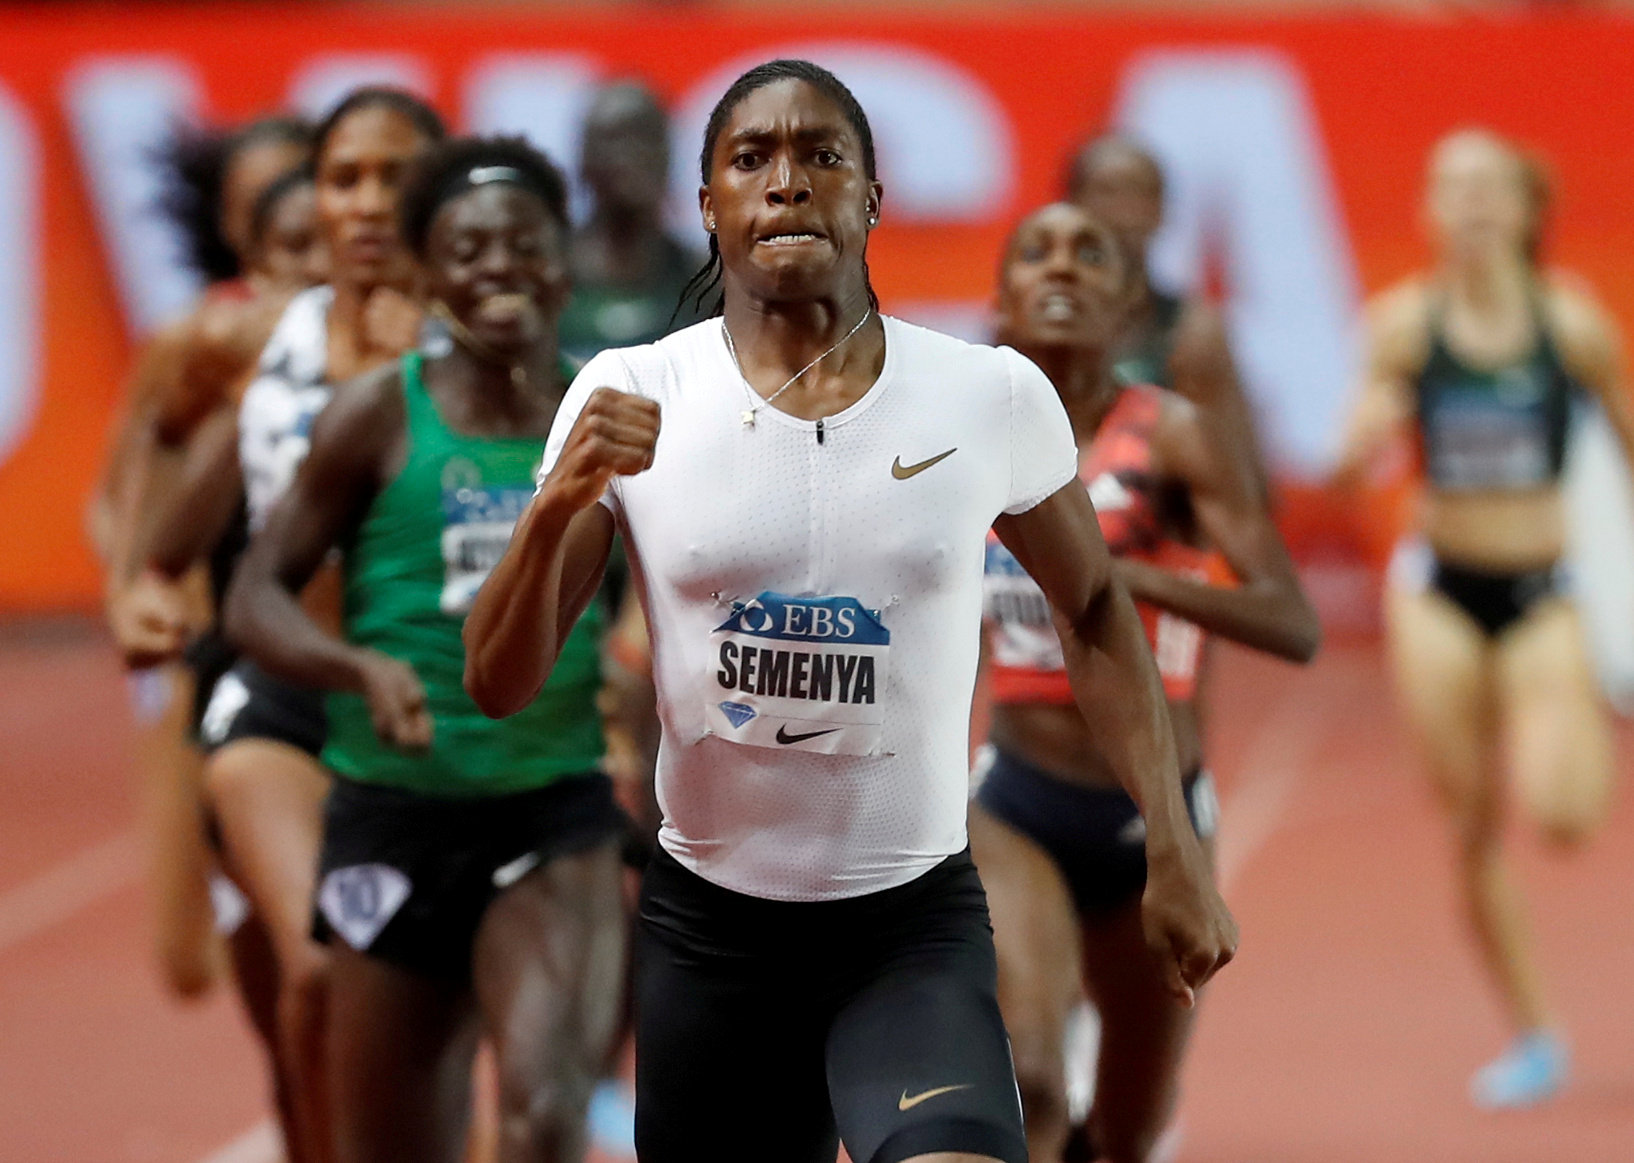 Athletics: Semenya cruises to 27th consecutive 800m victory